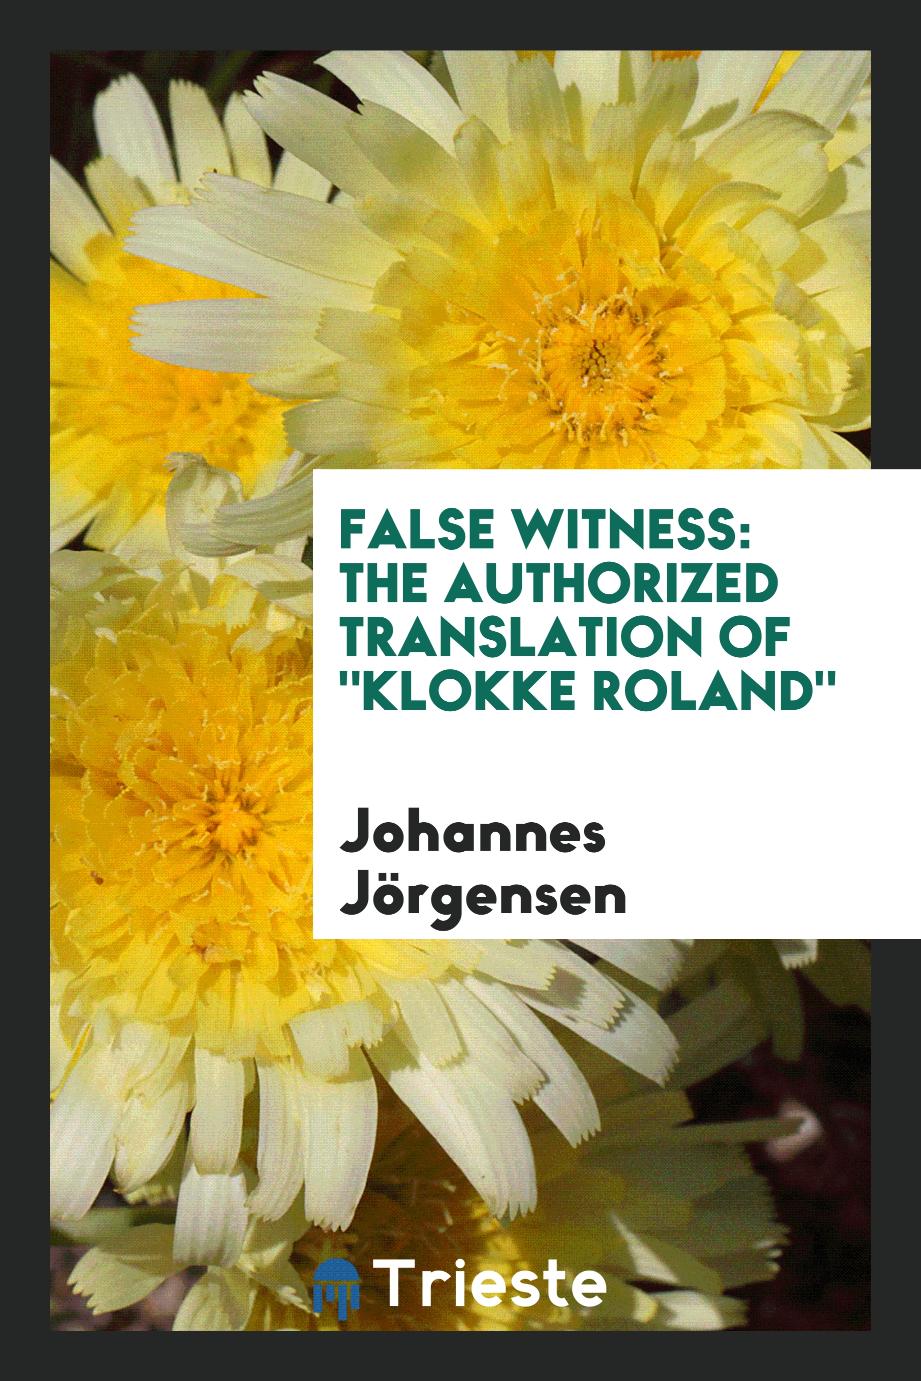 False witness: the authorized translation of "Klokke Roland"